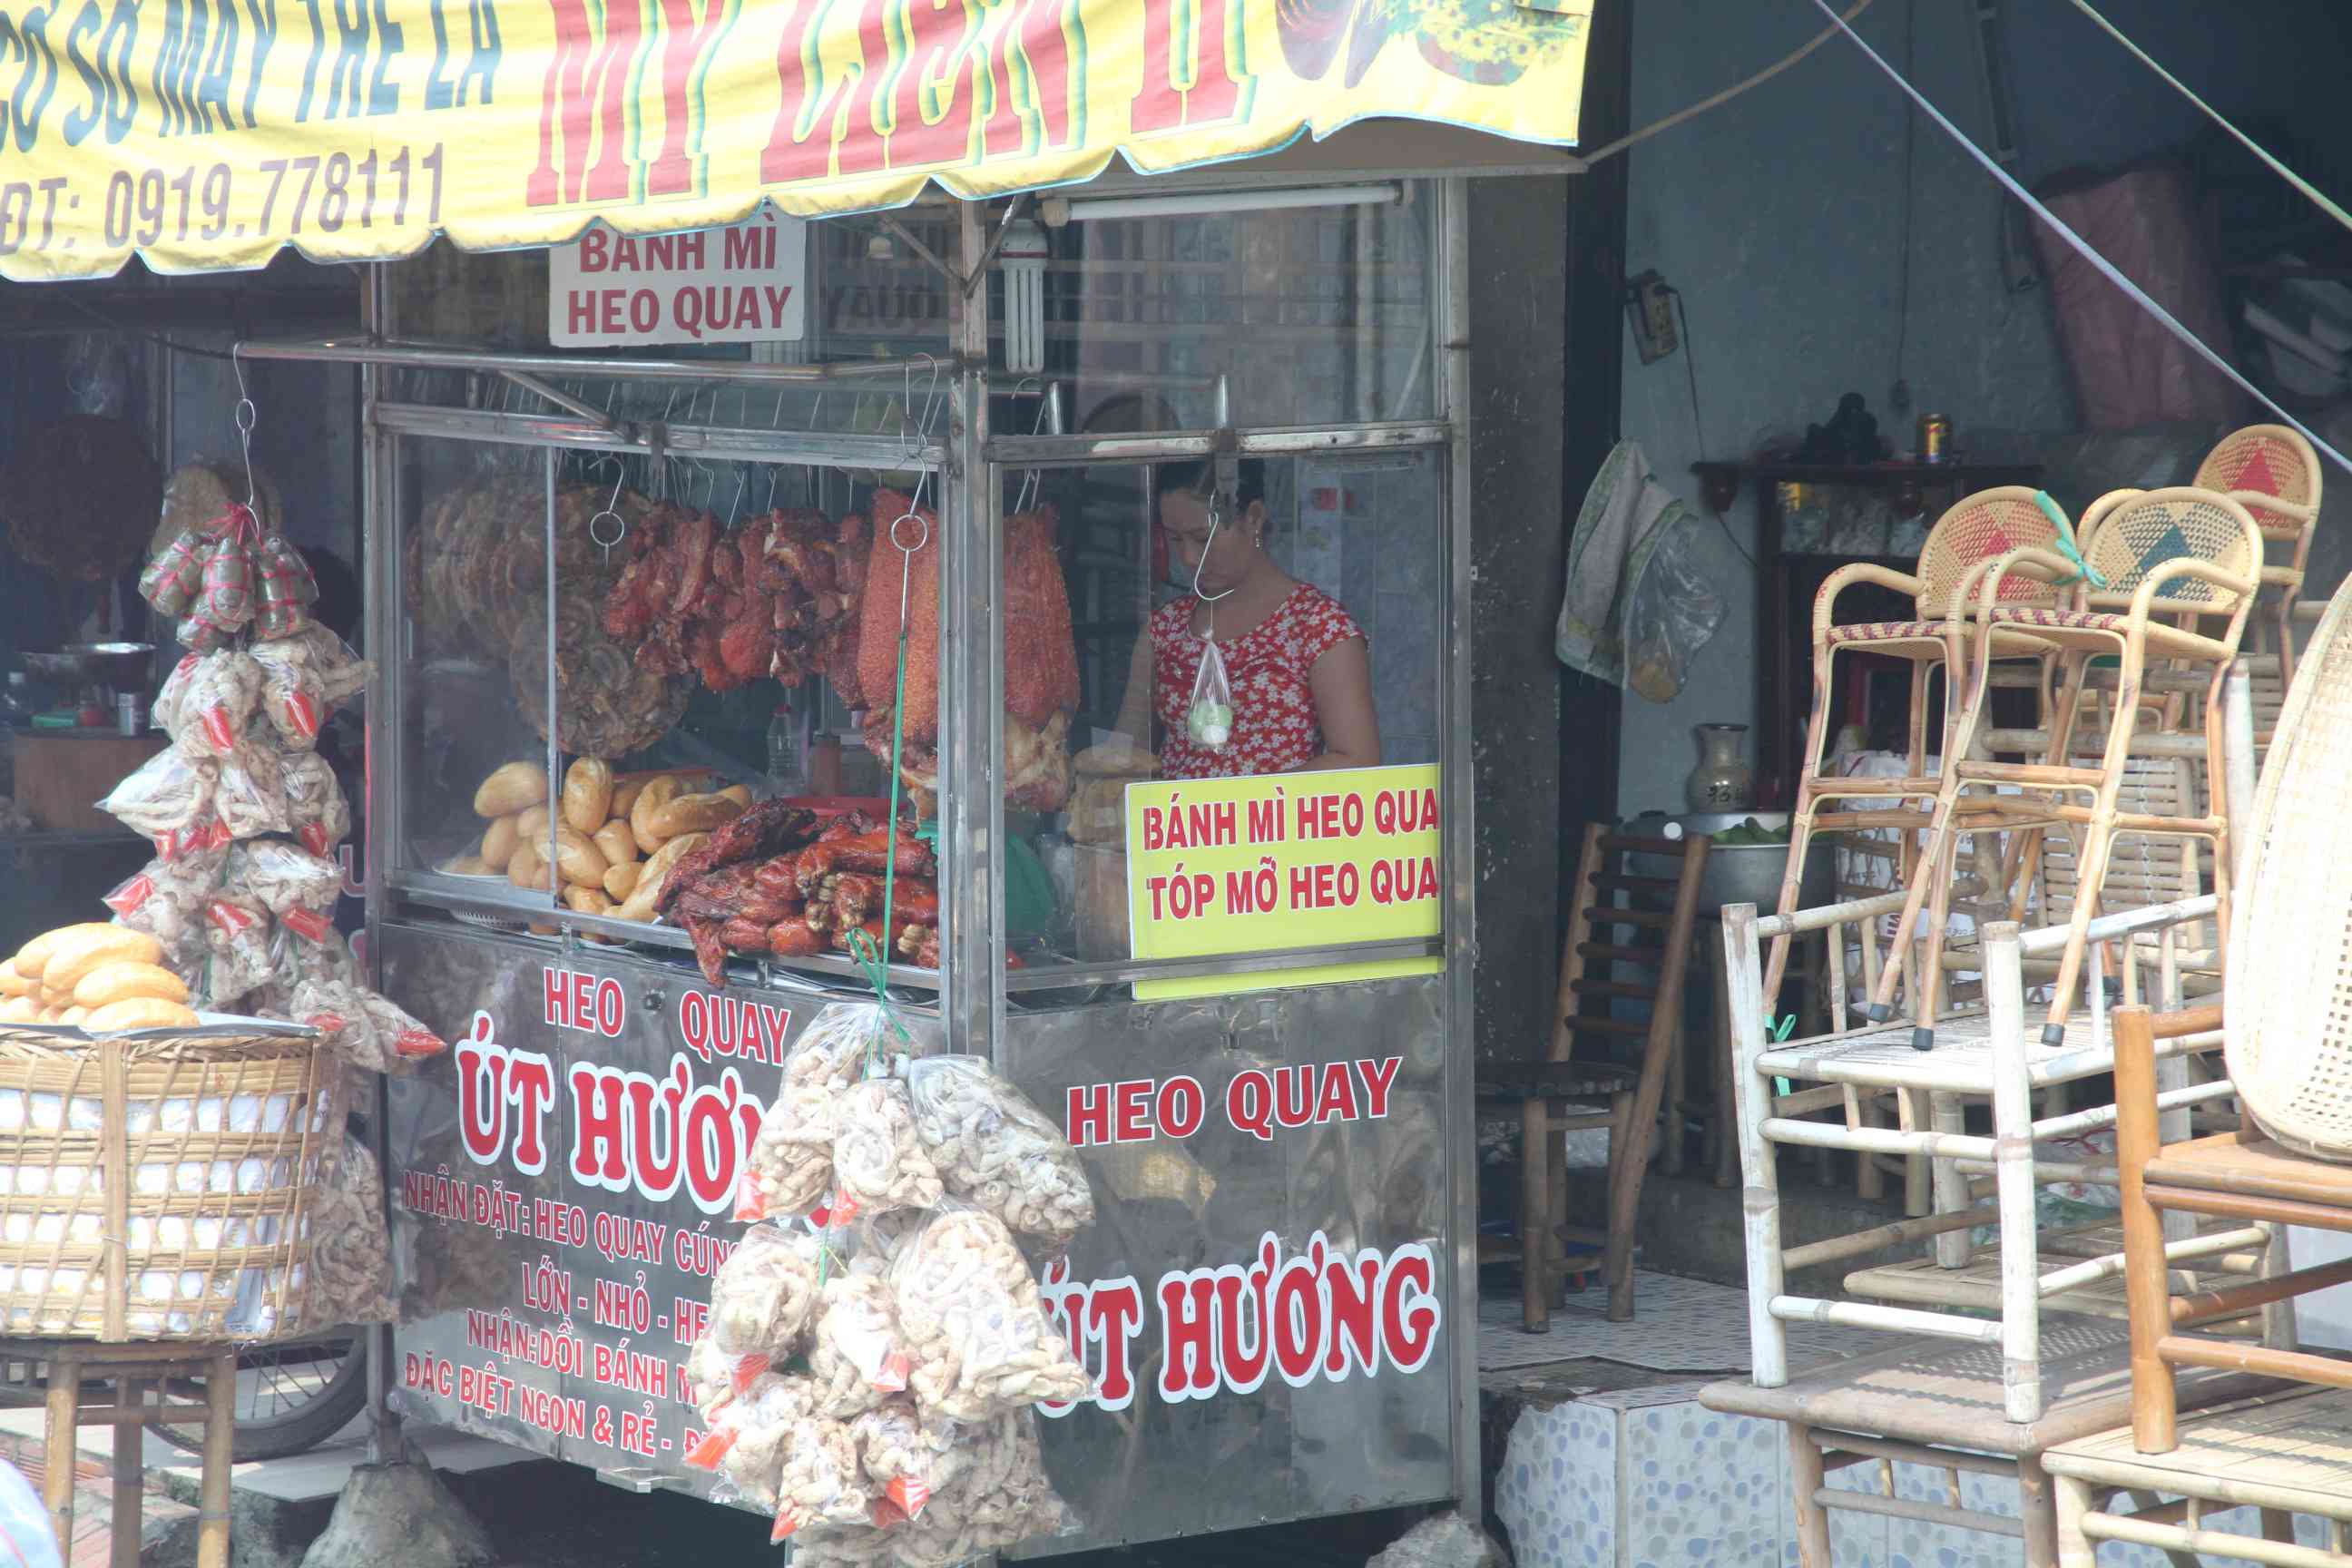 Verkauf von Köstlichkeiten am Straßenrand